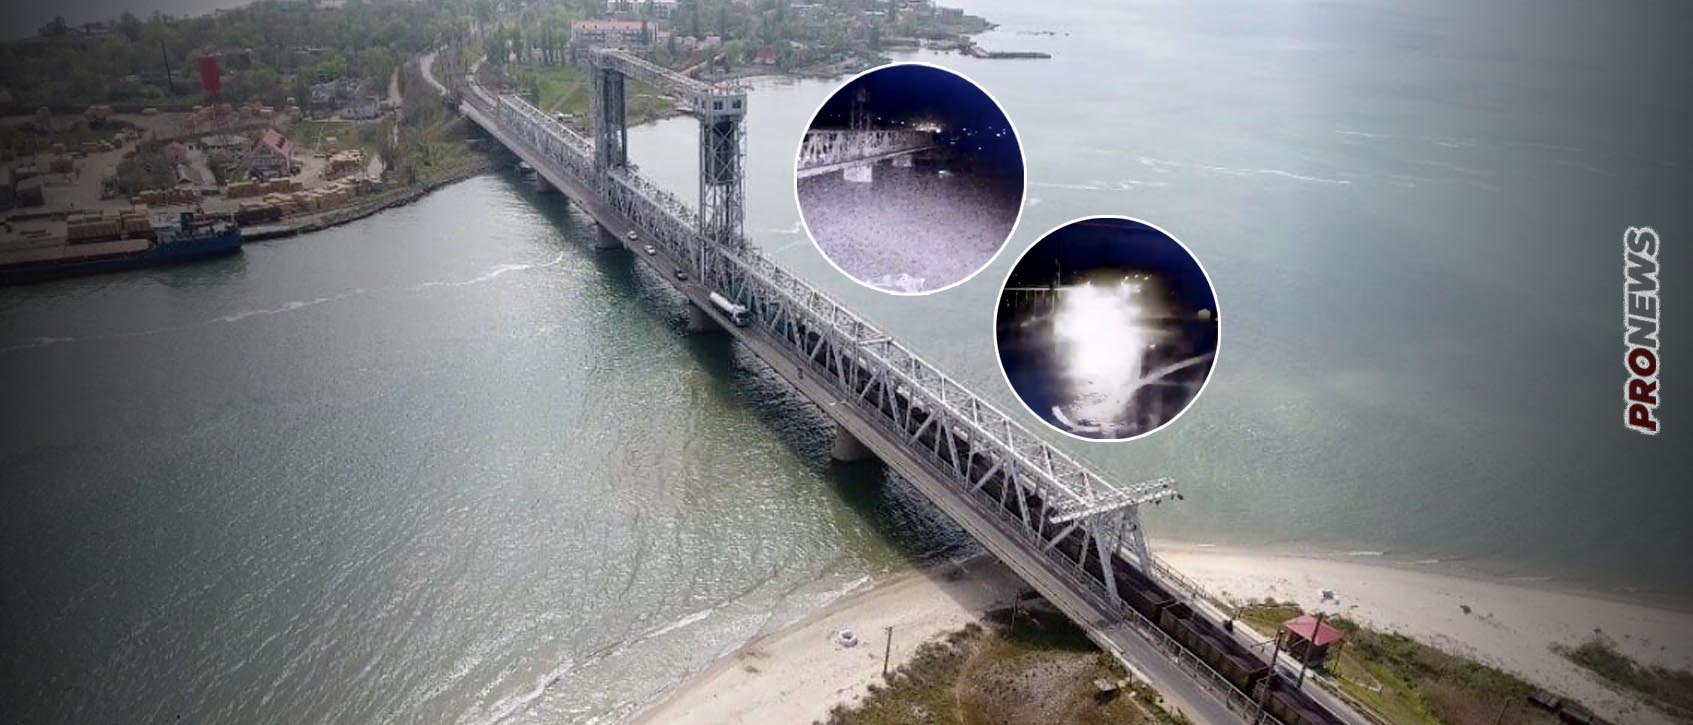 Eντυπωσιακό κτύπημα: Oι Ρώσοι ανατίναξαν την μεγάλη γέφυρα της Οδησσού με υποβρύχιο drone (βίντεο)